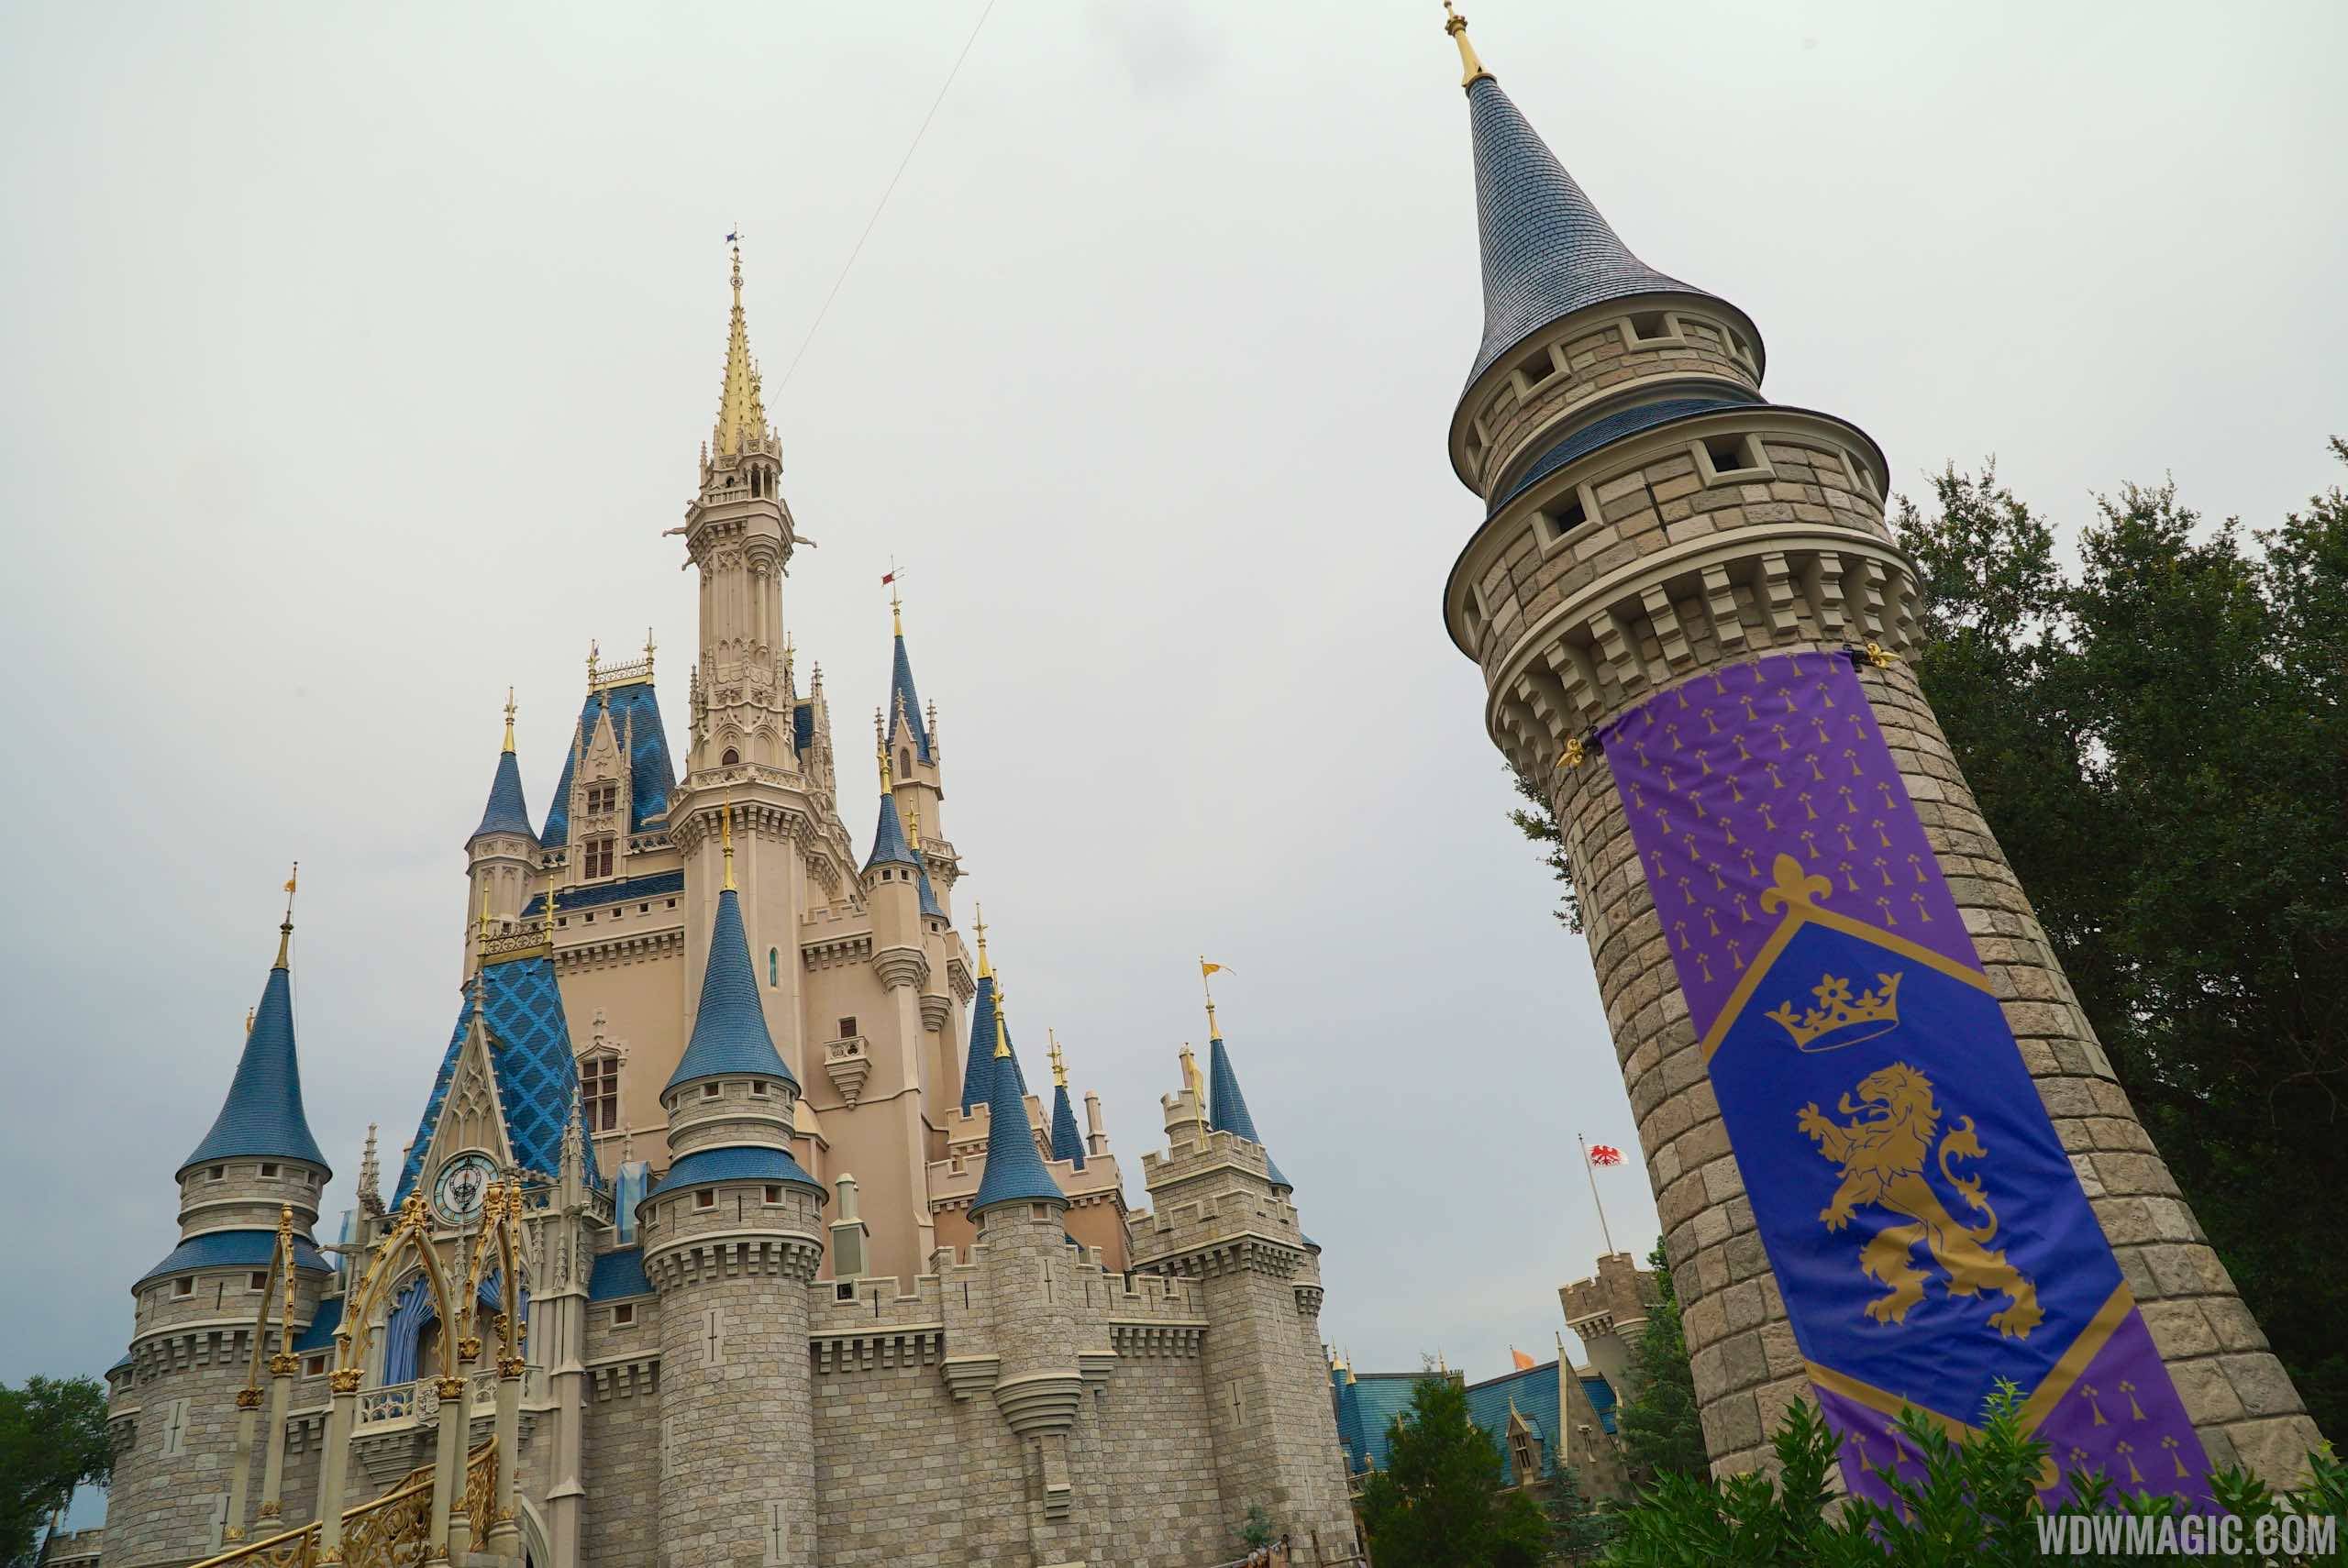 New Cinderella Castle turrets